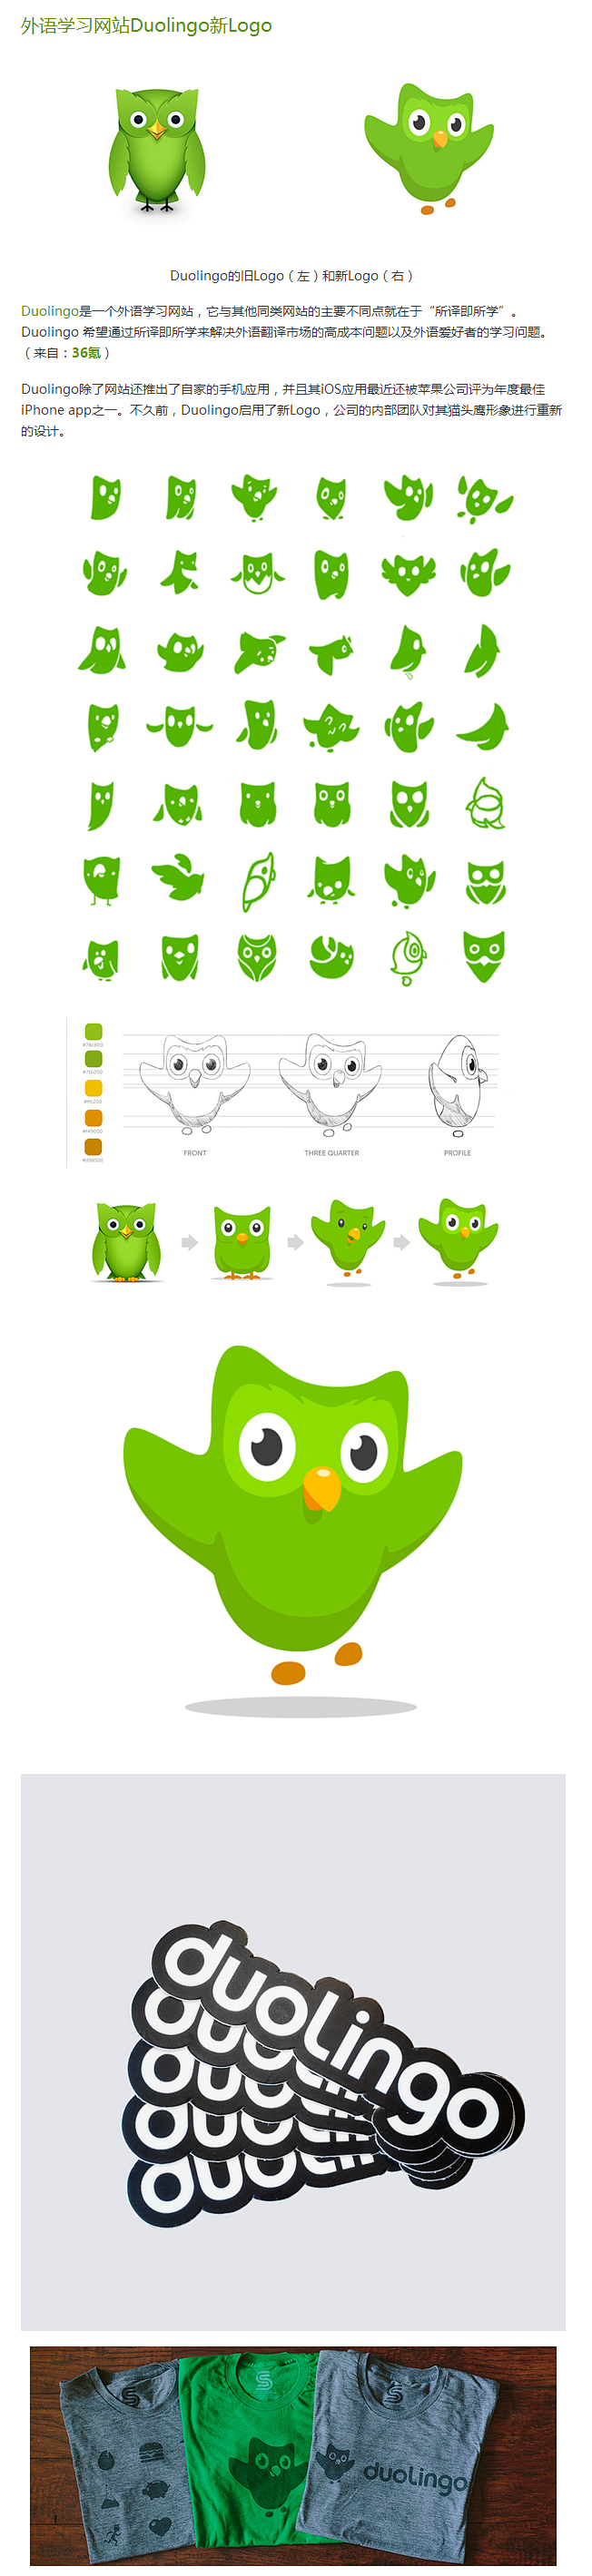 外语学习网站Duolingo新Logo ...